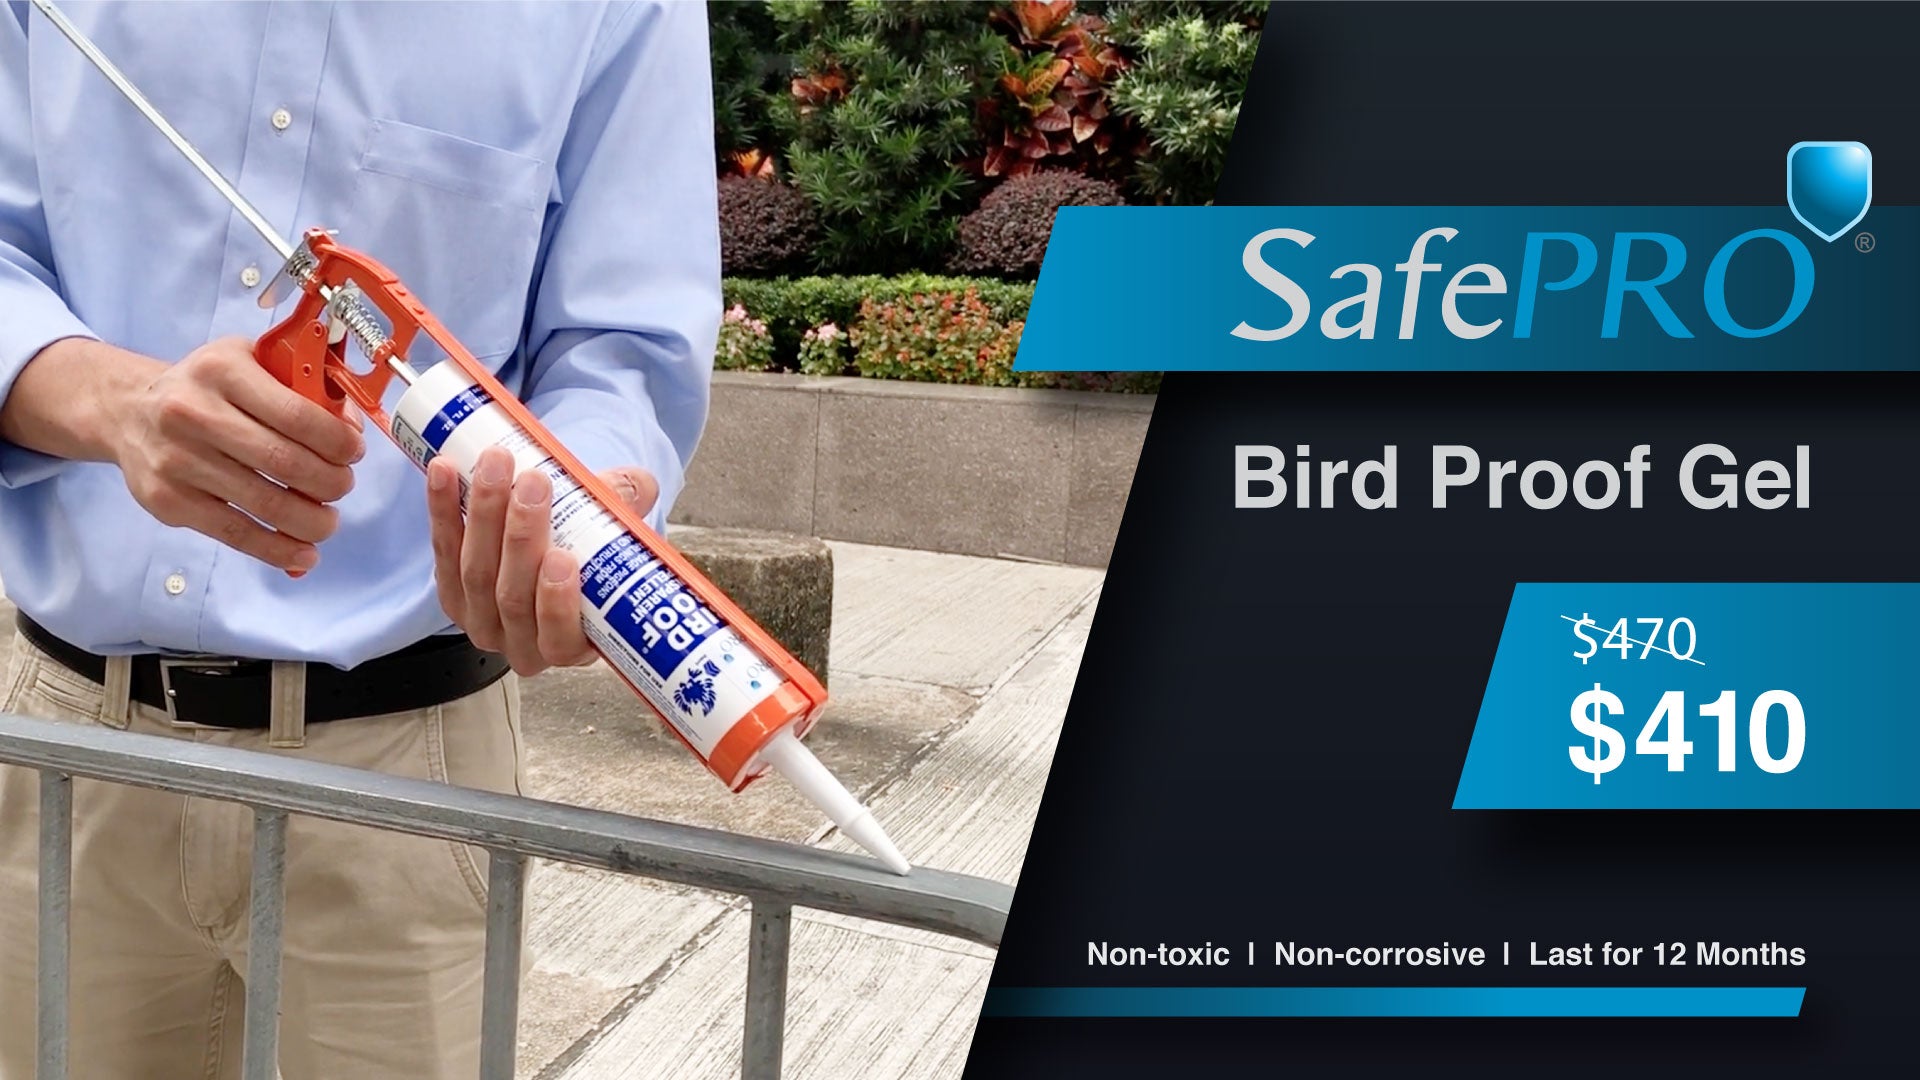 【Limited Time Offer】SafePRO® Bird Proof Gel On Sale - 13% Off!